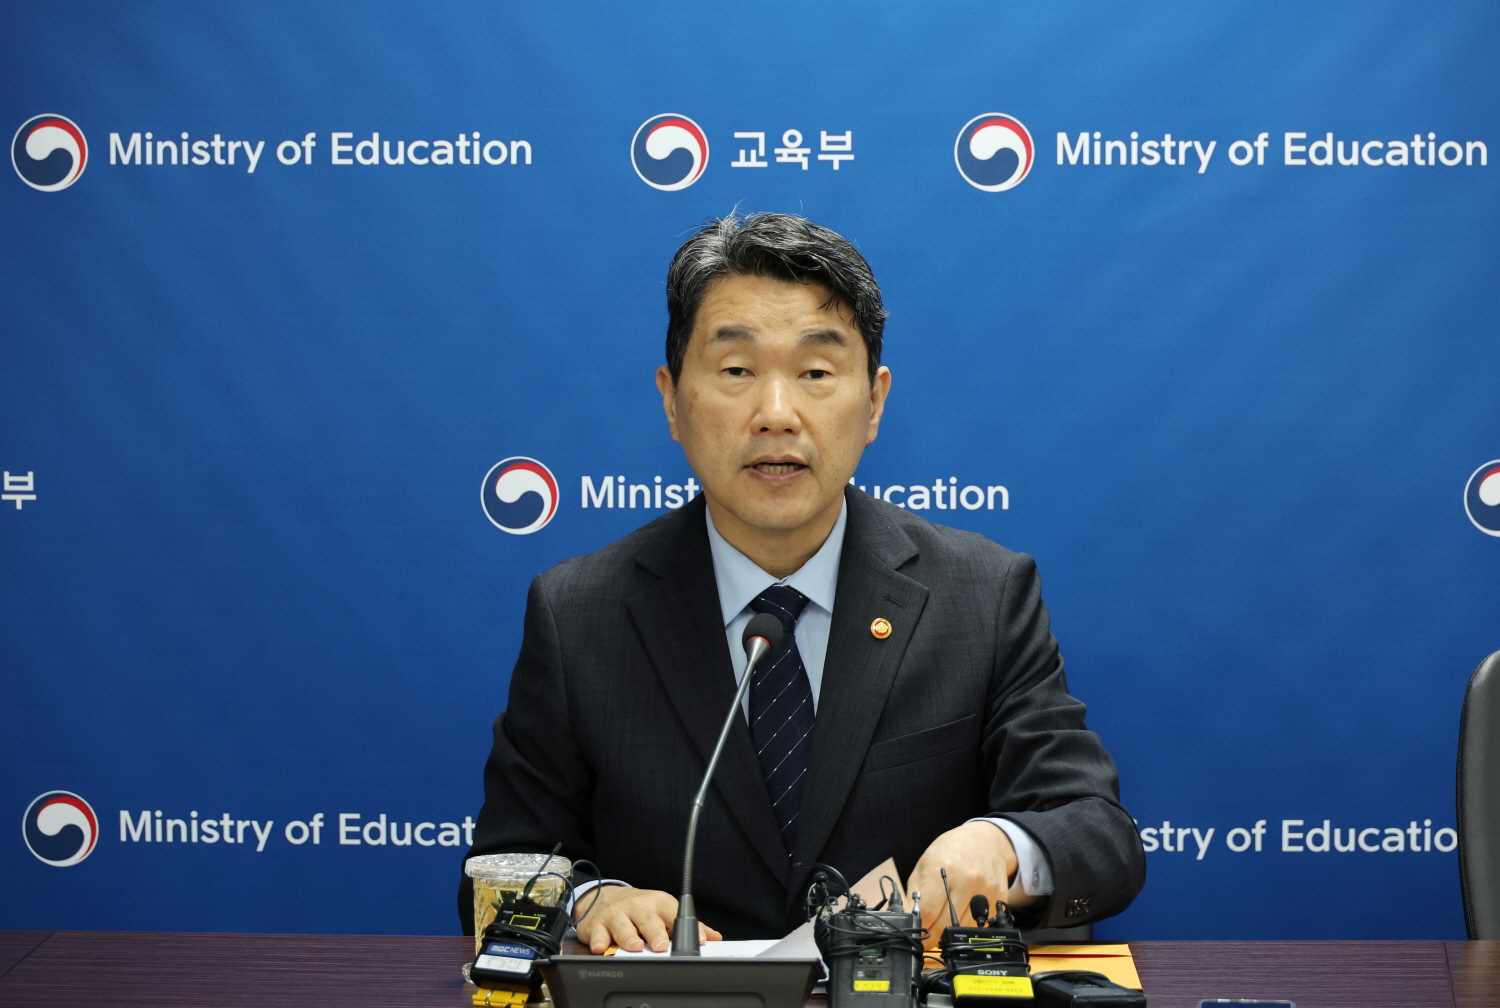 이주호 부총리 겸 교육부장관은 5월 20일(월), 한국교육시설안전원에서 의과대학을 운영하고 있는 40개교 대학 총장과 영상 간담회를 개최했다.